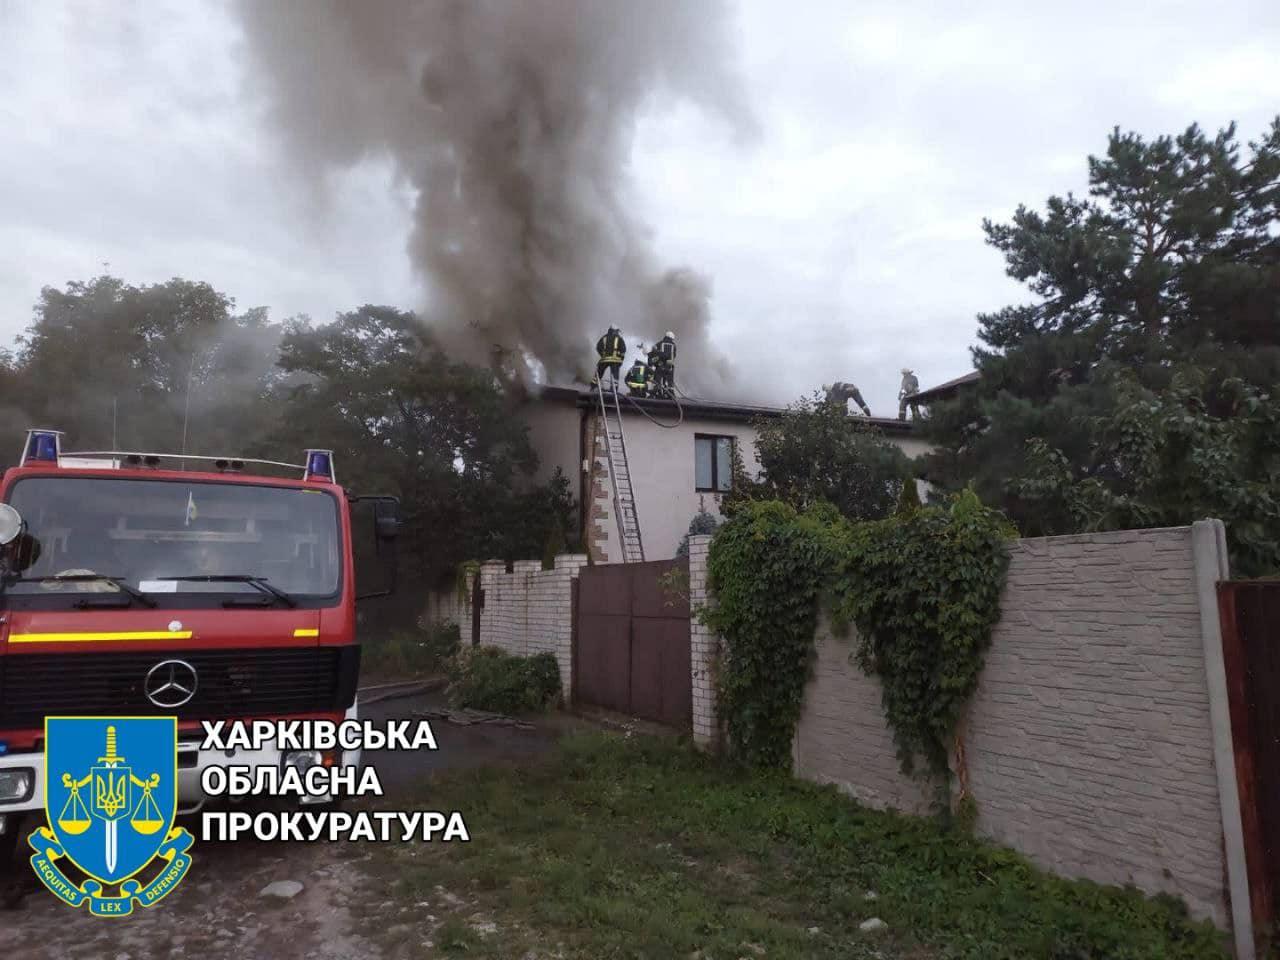 Charkov, rodinný dom v plameňoch (2). 